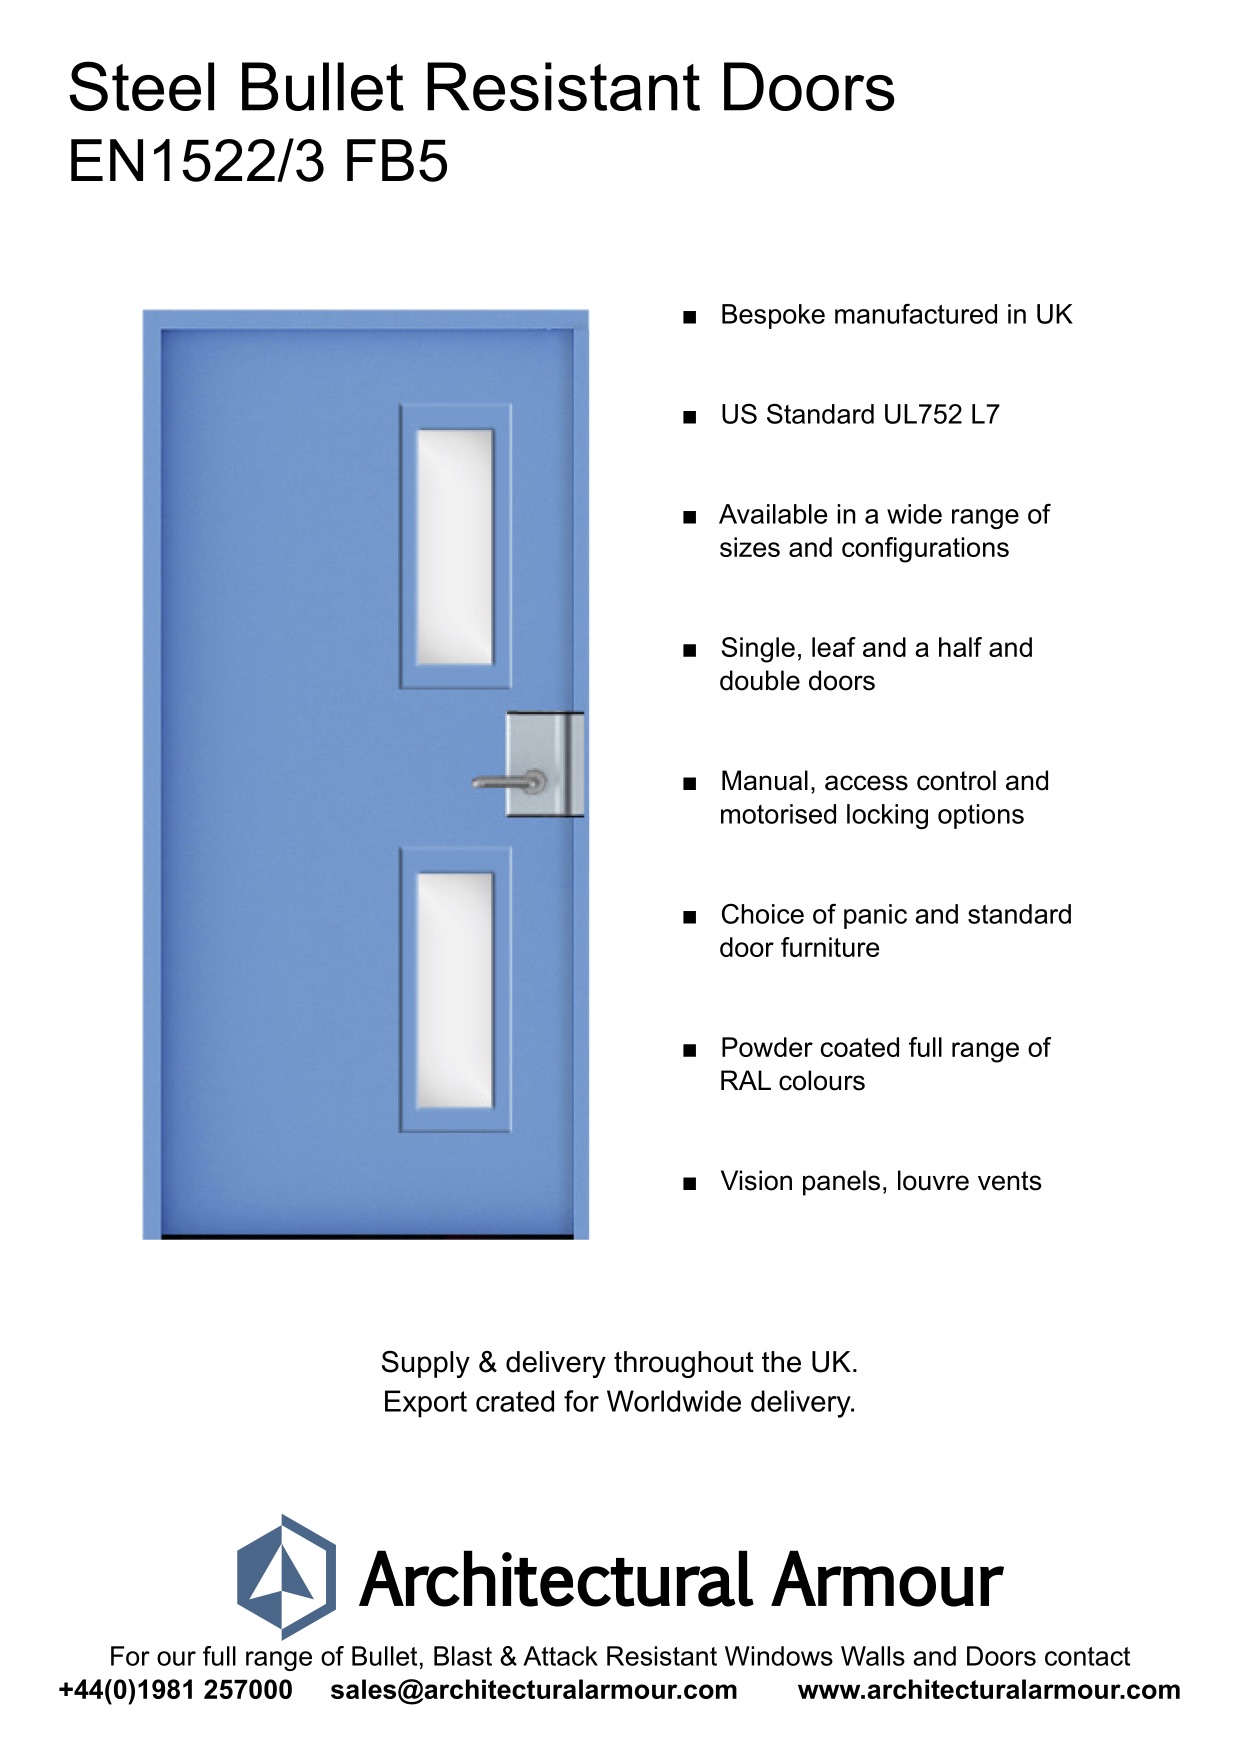  EN1522-3-FB5-Bullet-Resistant-Metal-Security-Door-UK